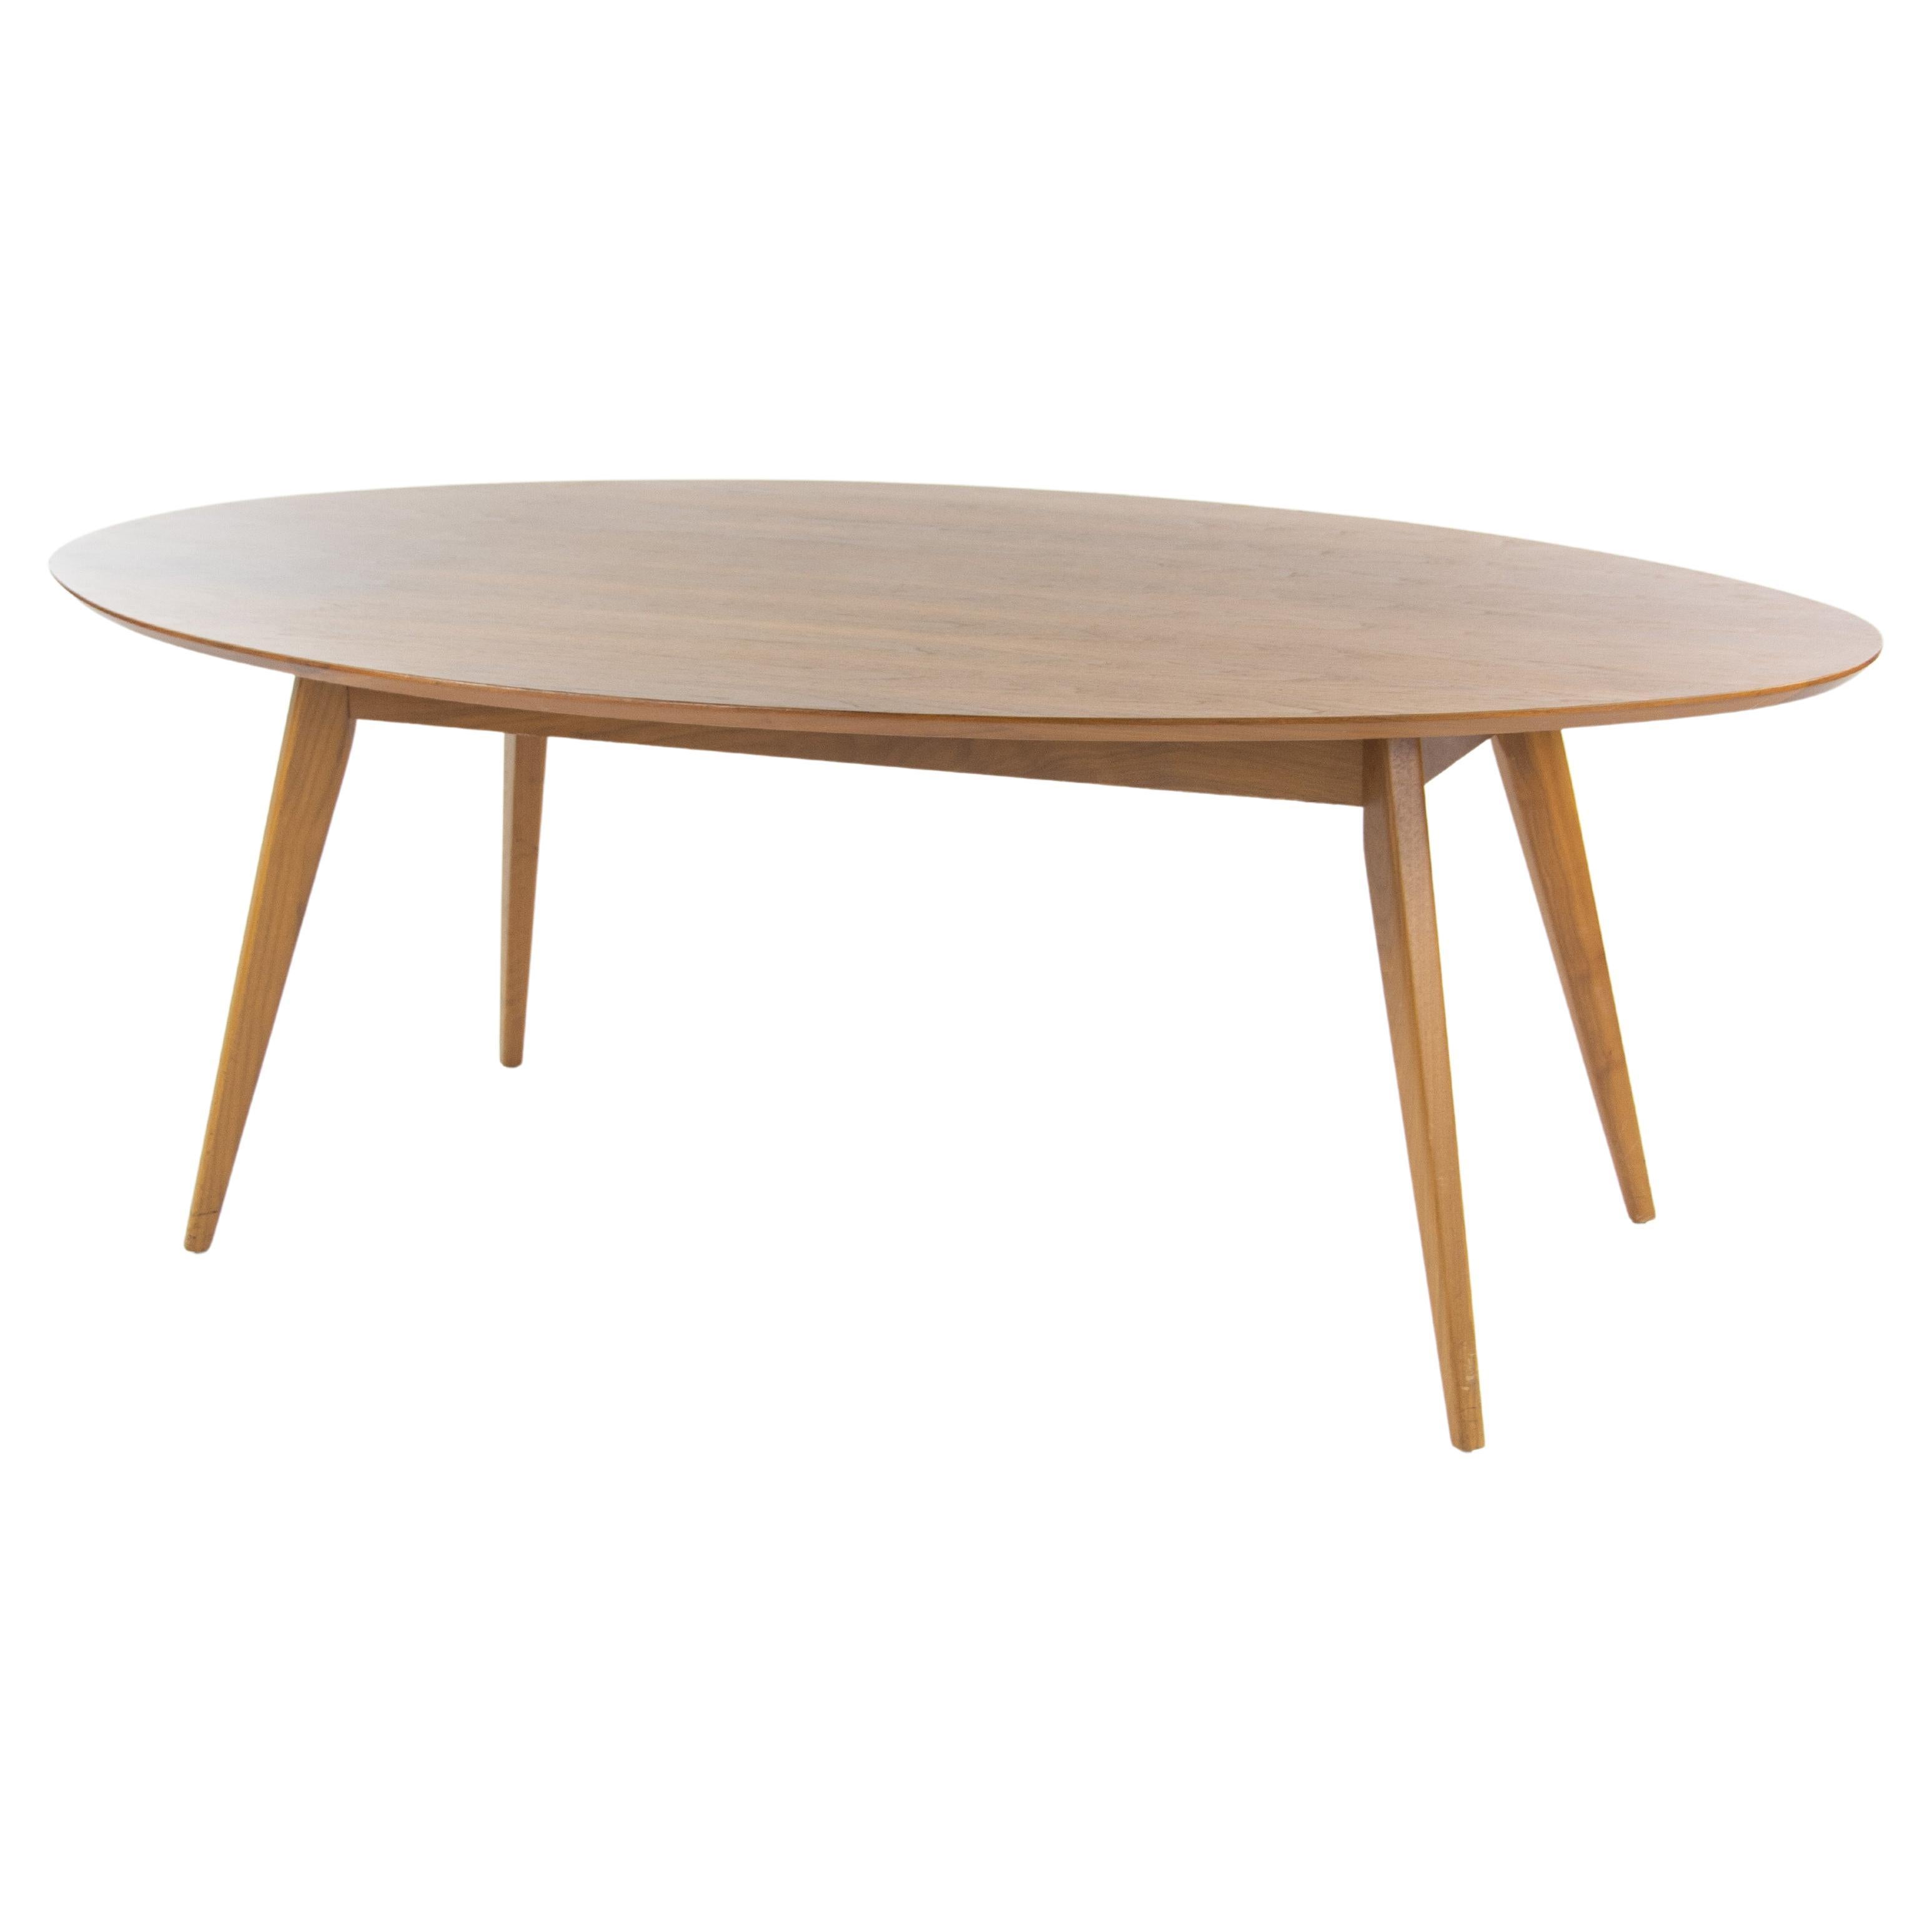 Table de conférence / table de salle à manger / table de conférence ovale Jens Risom pour Knoll, 78x48 pouces